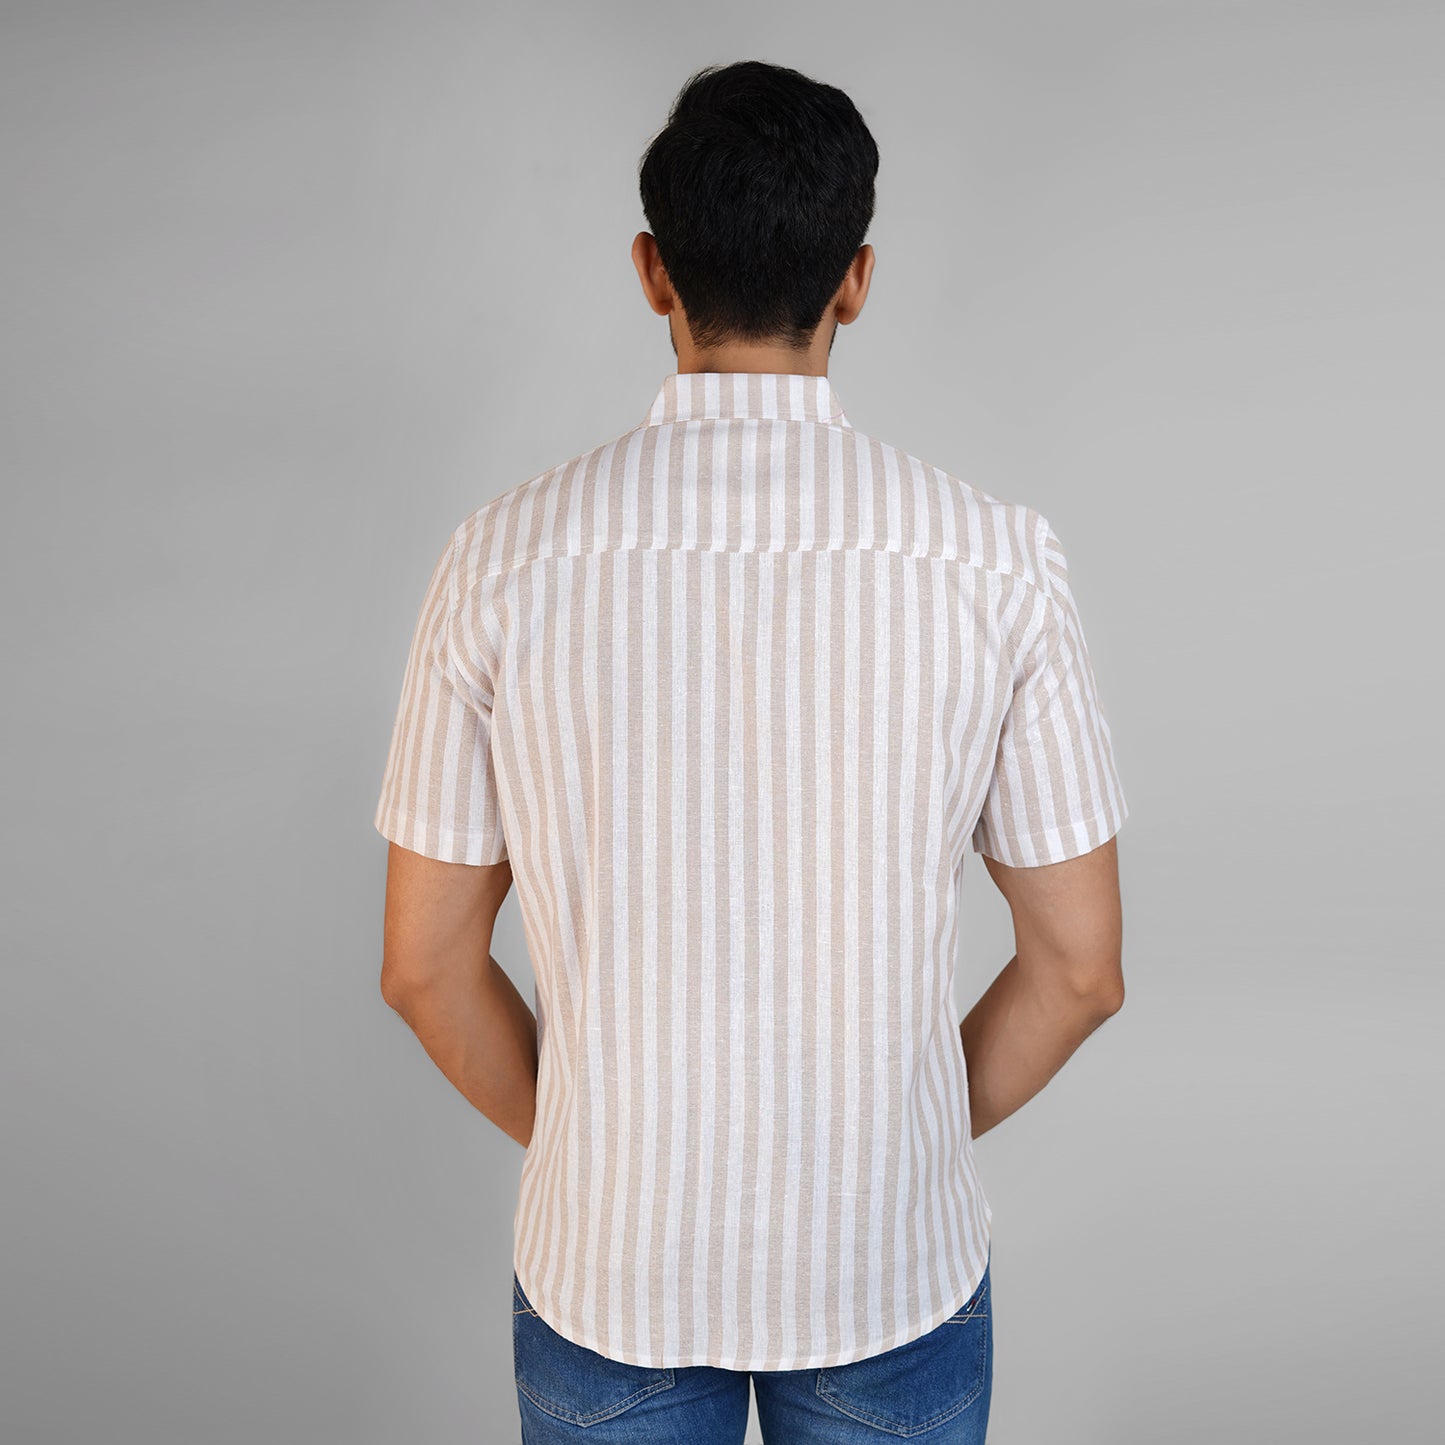 Linen Summer Shirts for Men- White & Beige